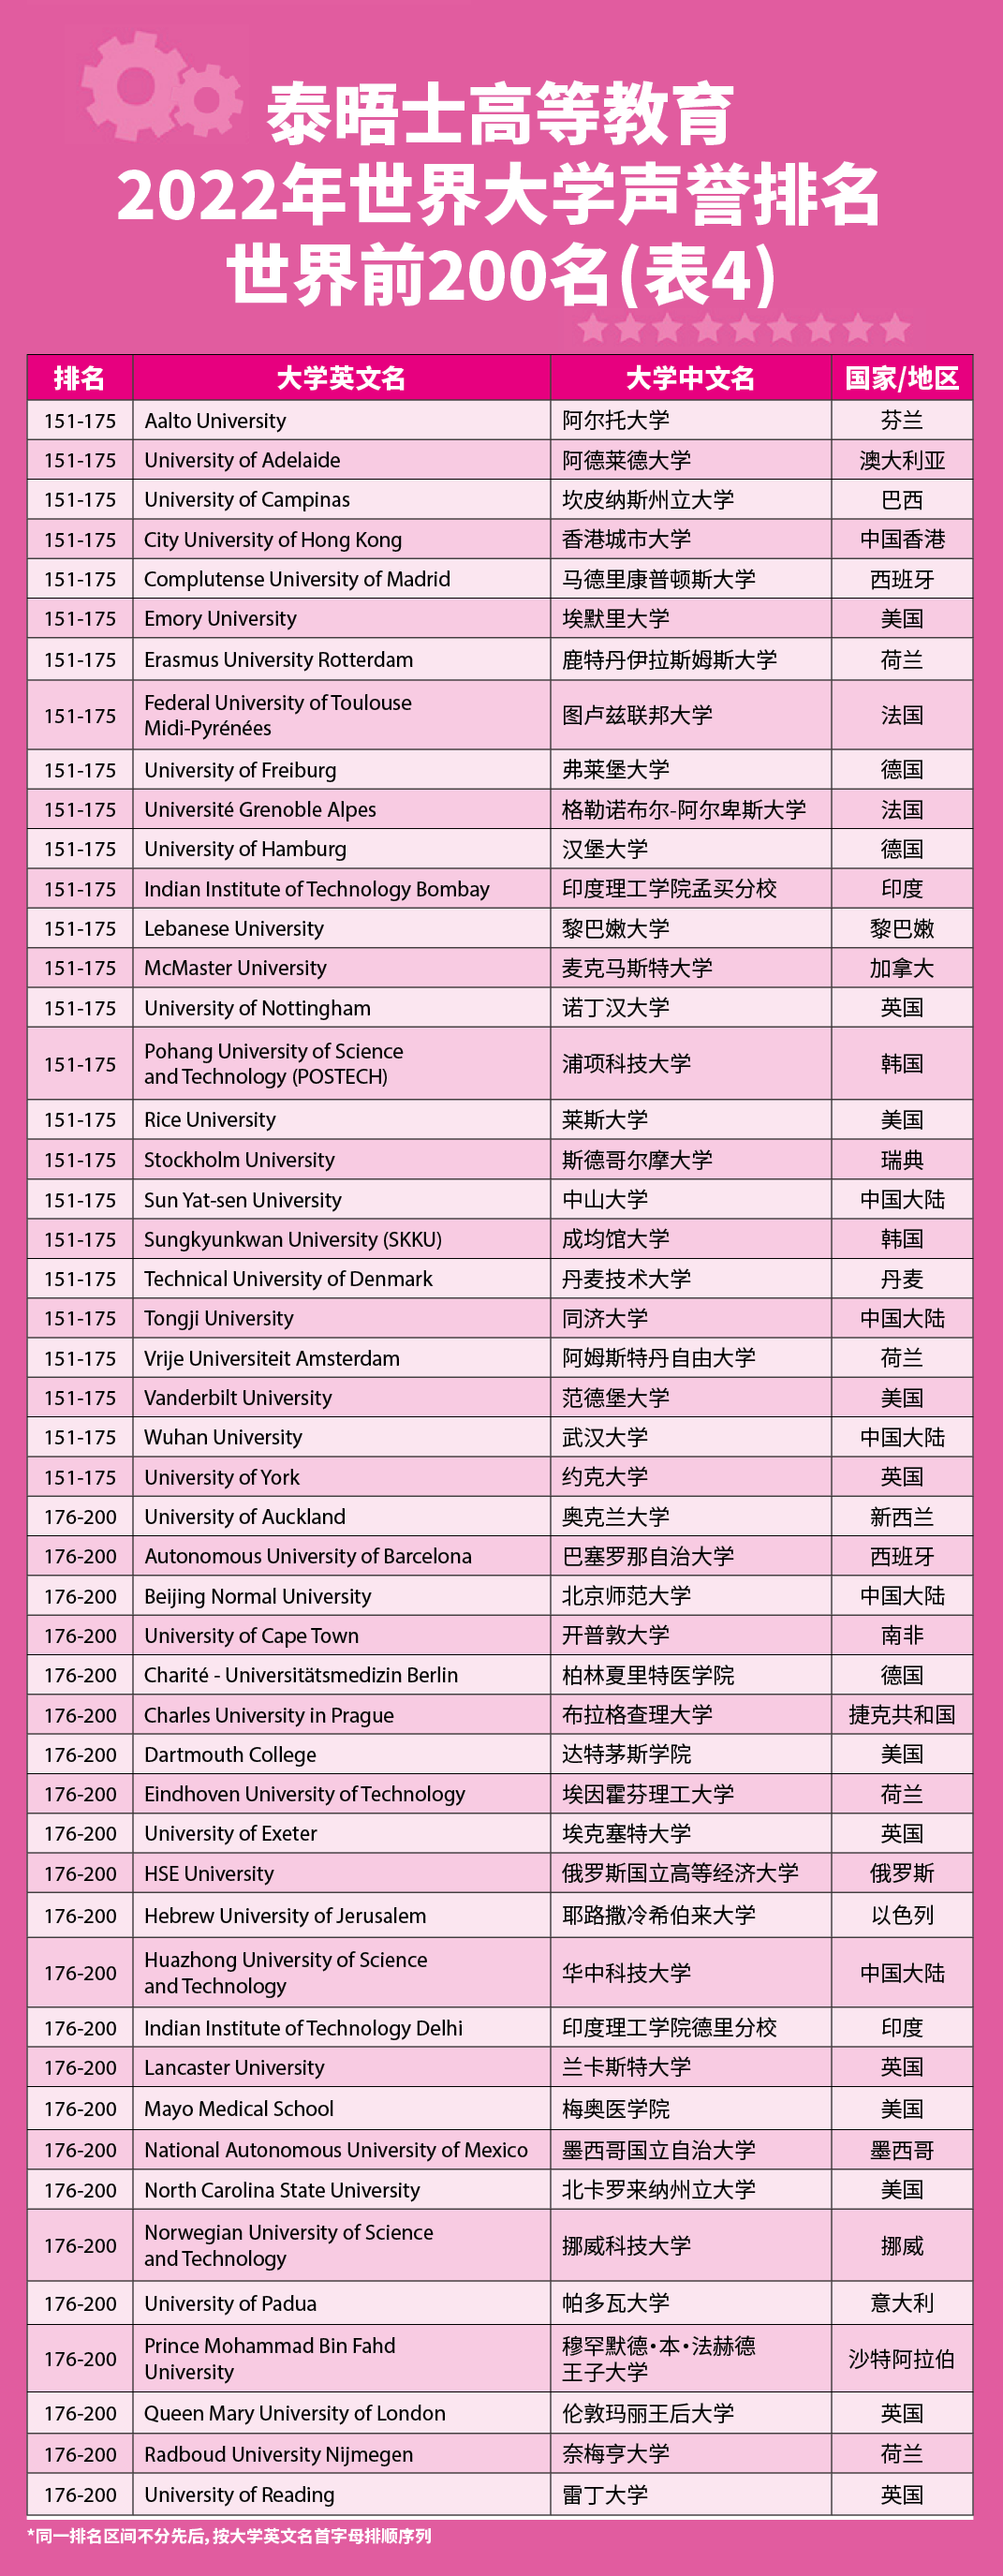 22泰晤士高等教育世界大学声誉榜单发布！